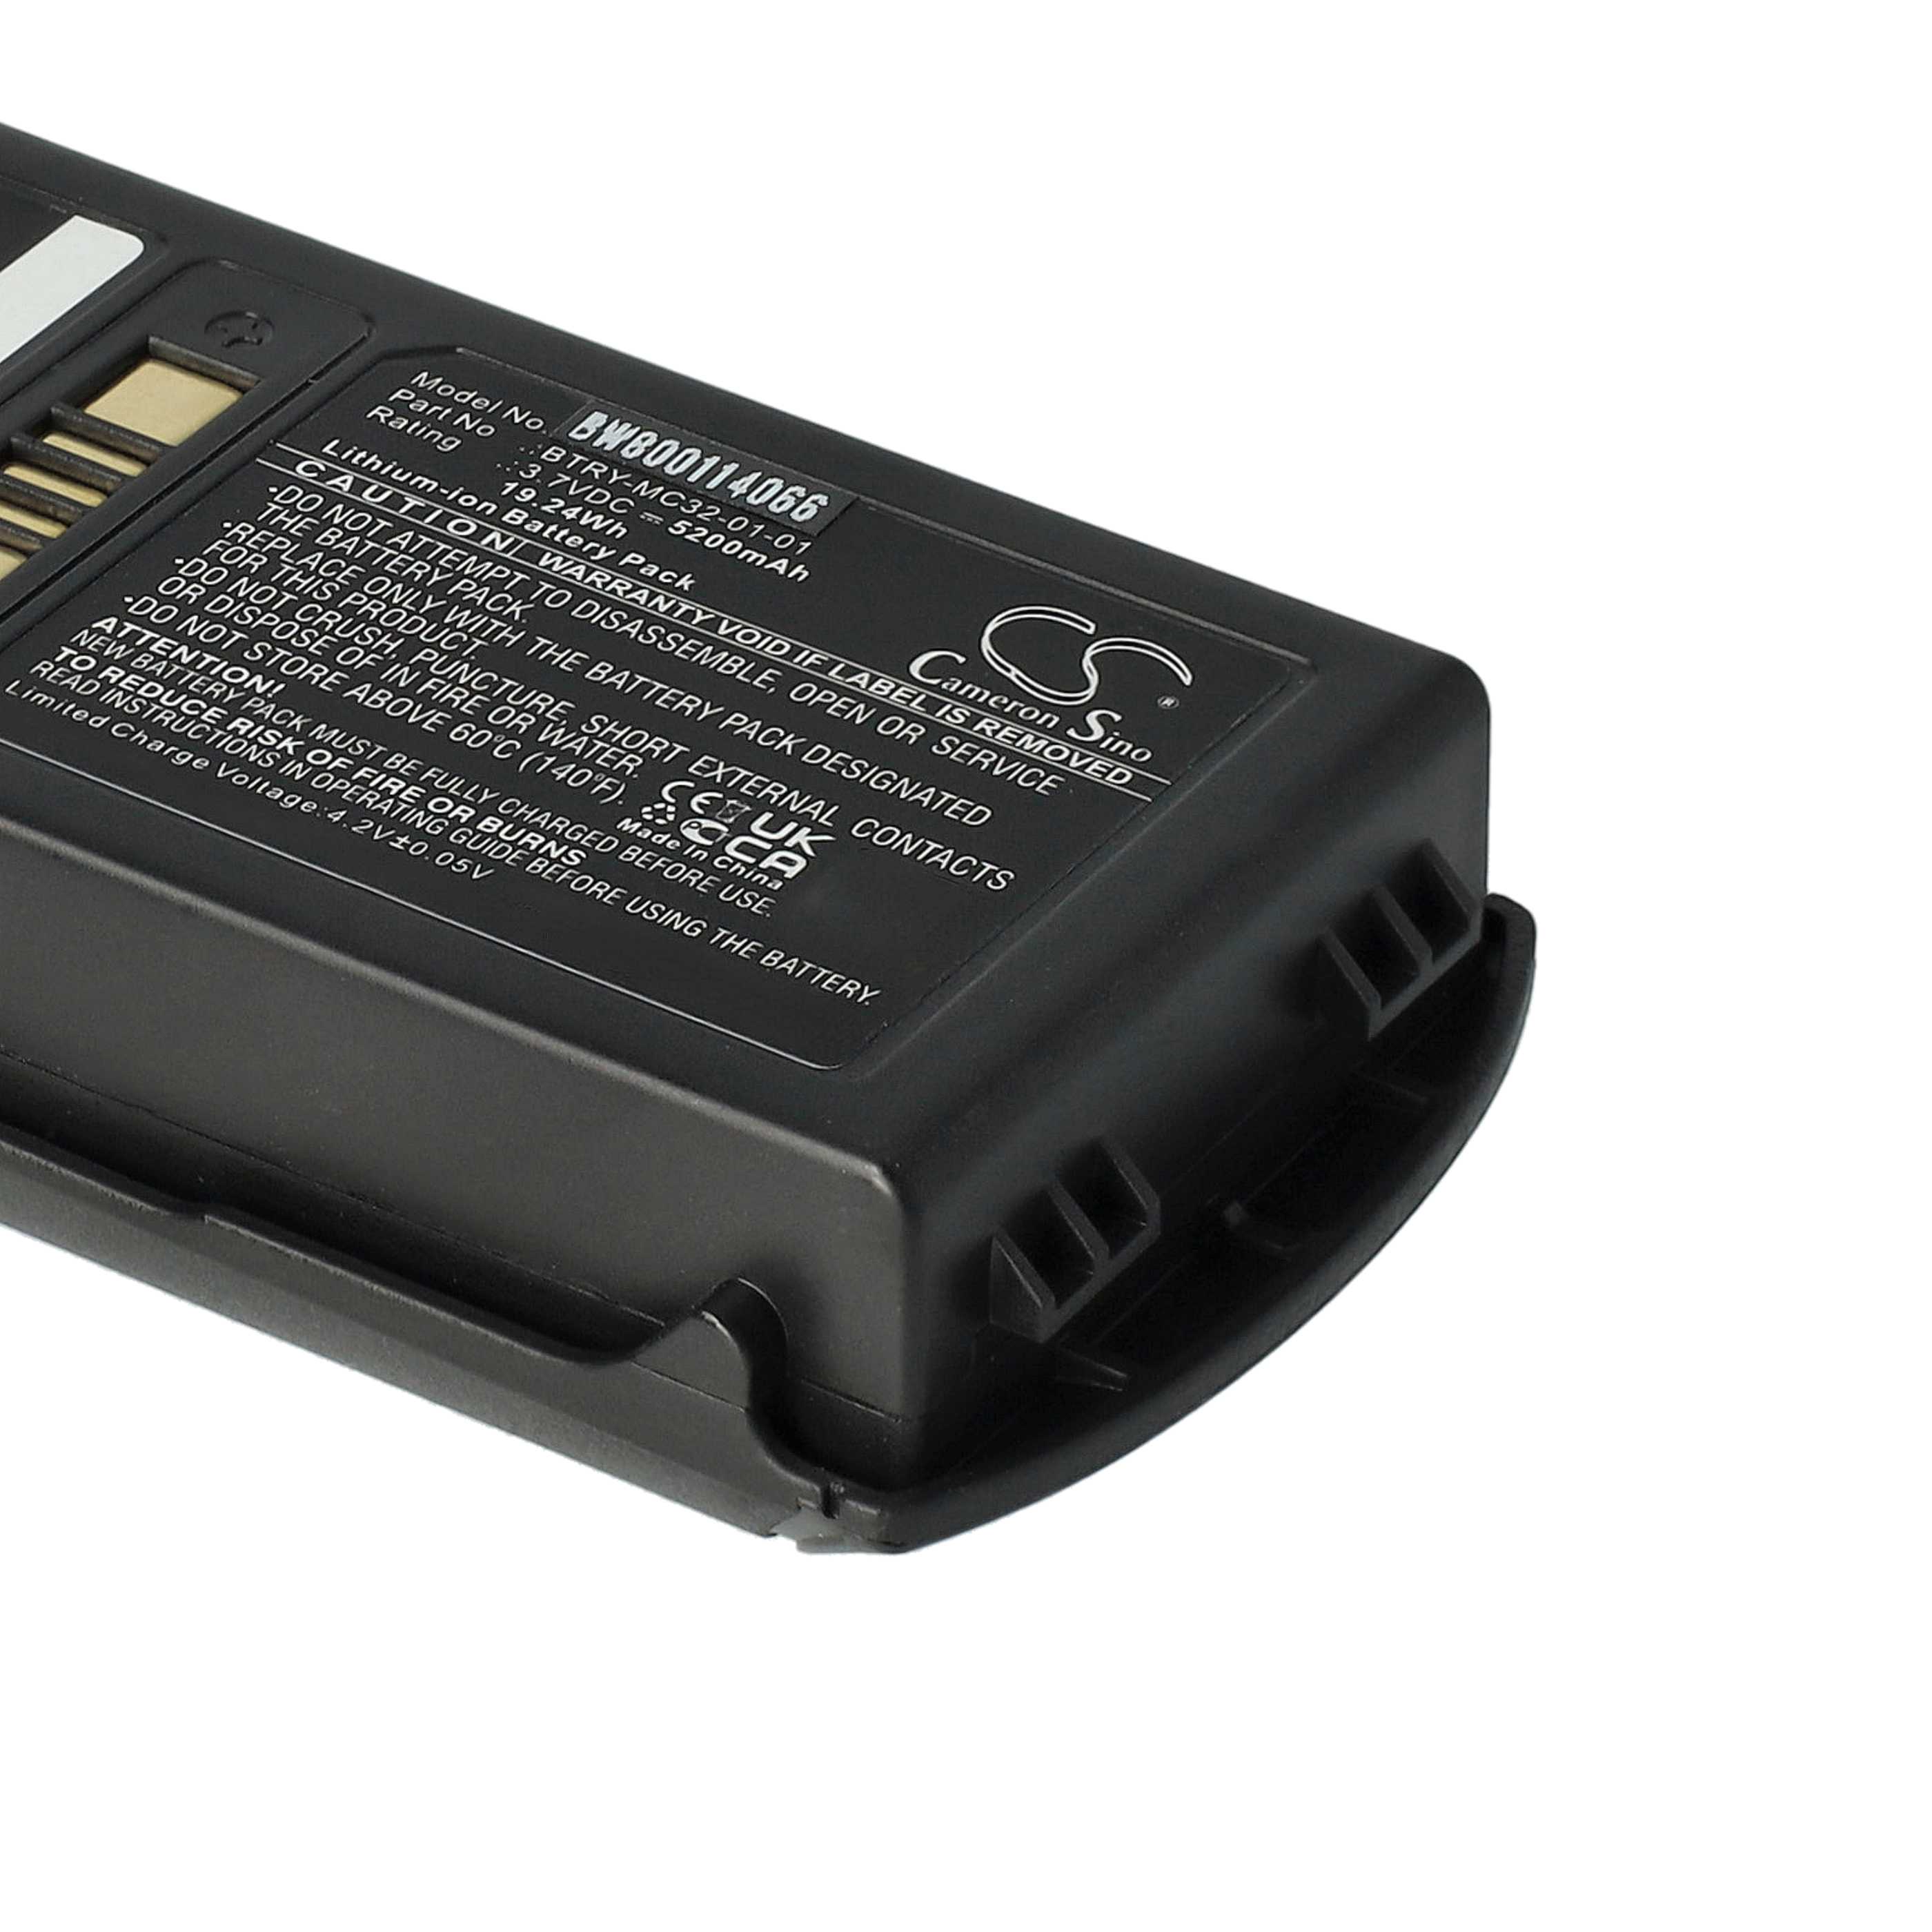 Batterie remplace Motorola BTRY-MC32-01-01 pour scanner de code-barre - 5200mAh 3,7V Li-ion